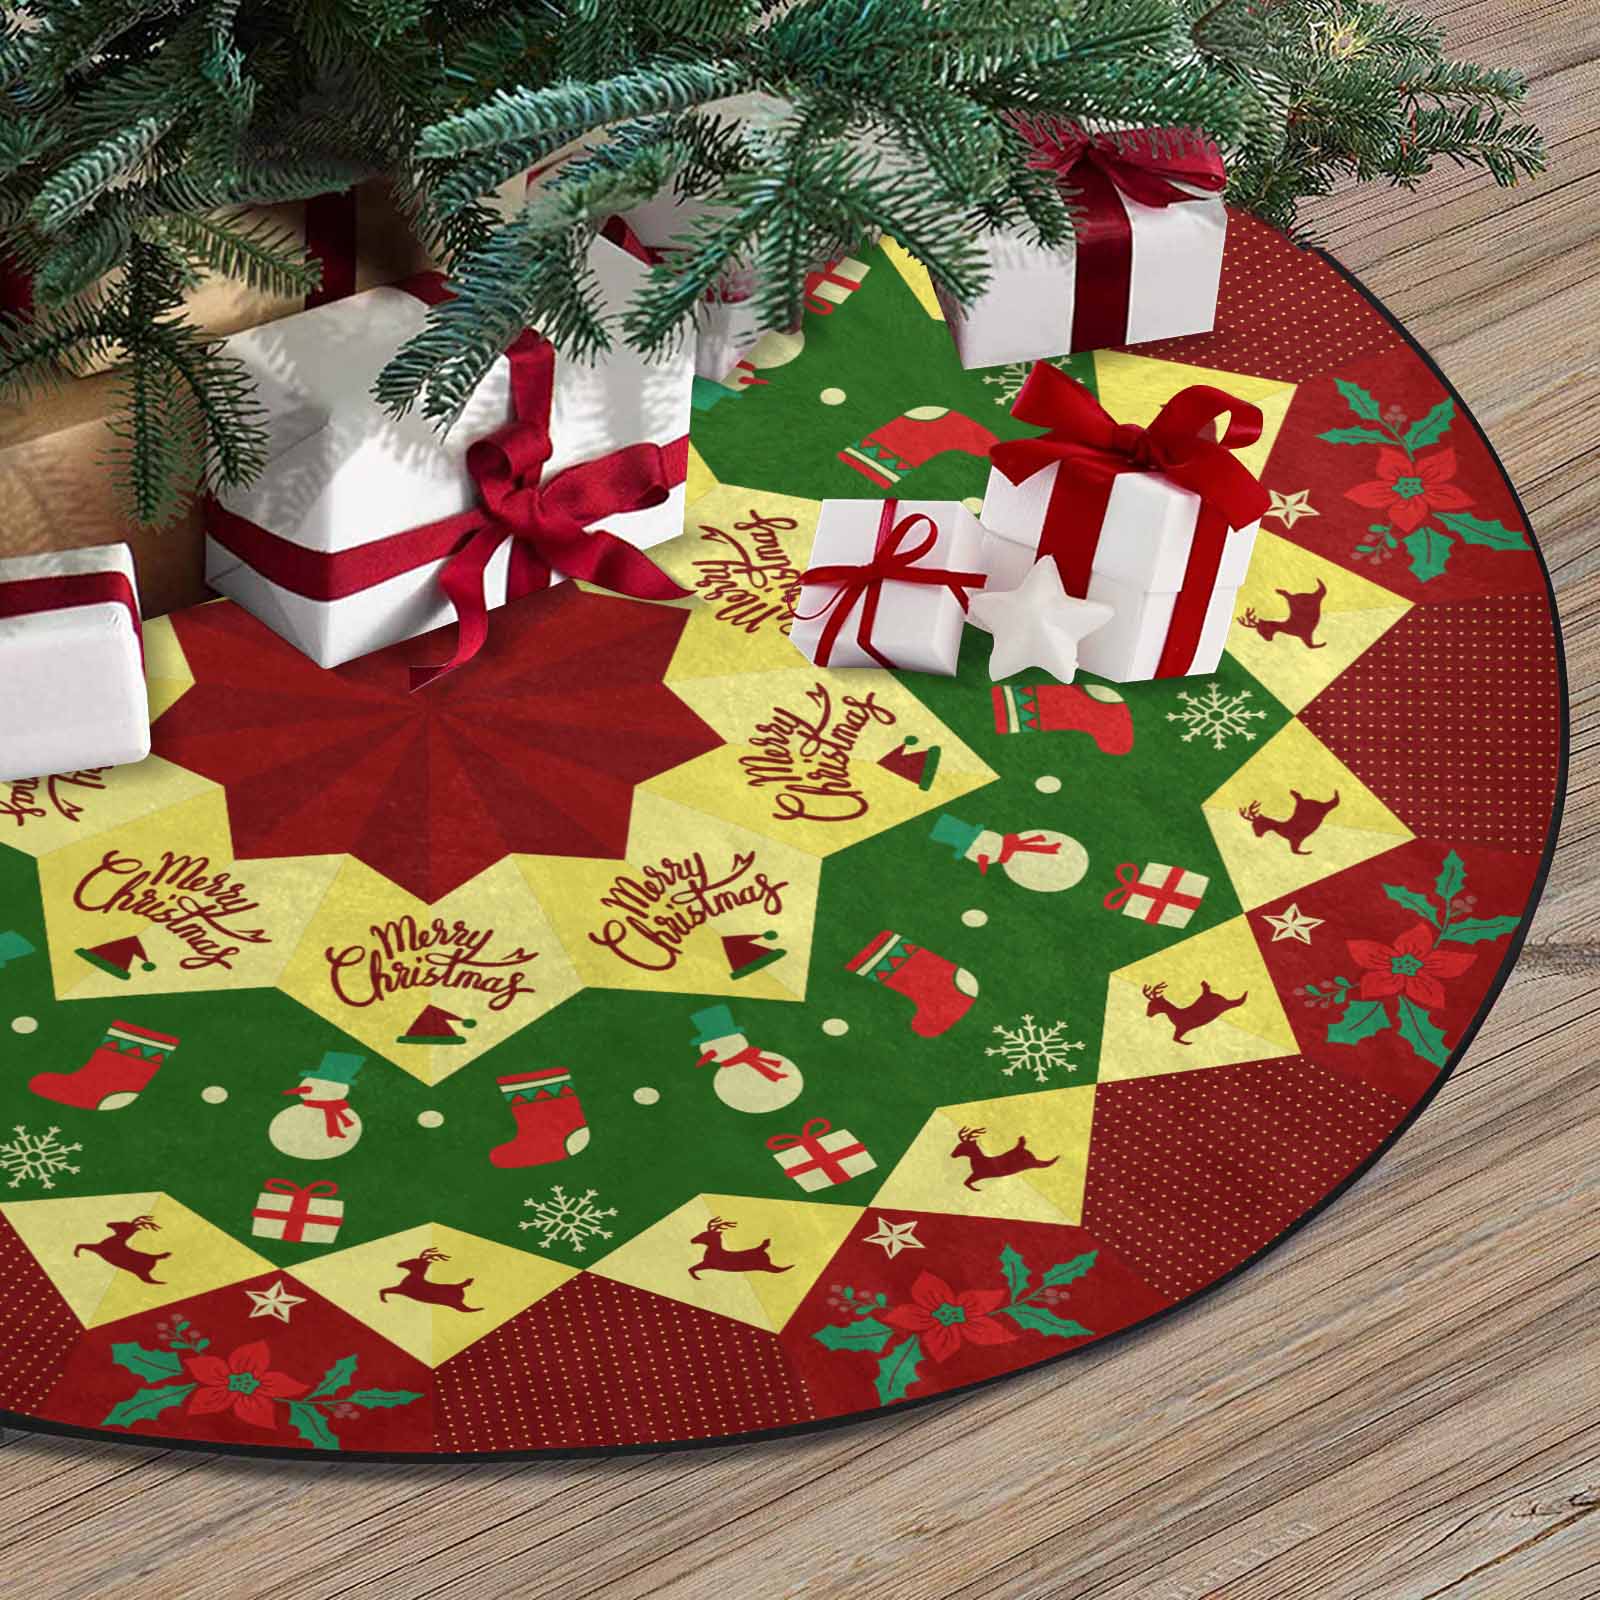 Christmas Tree Skirt, Decoration For Christmas Tree, Home Decor